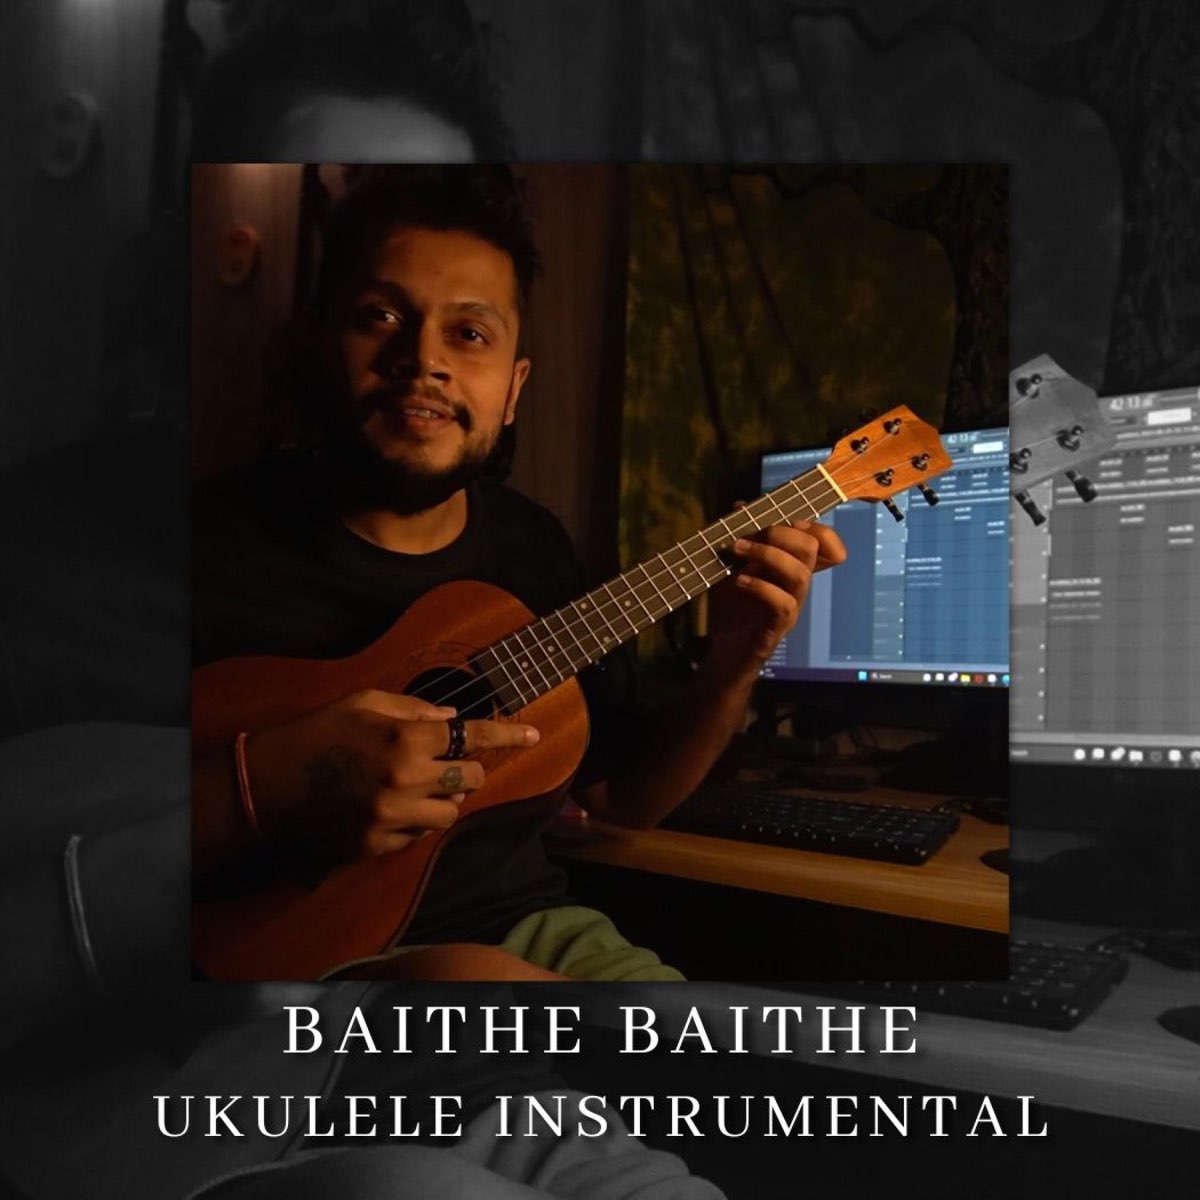 Baithe Baithe (Ukulele Instrumental) - Single - Album by Strings of  Symphony - Apple Music